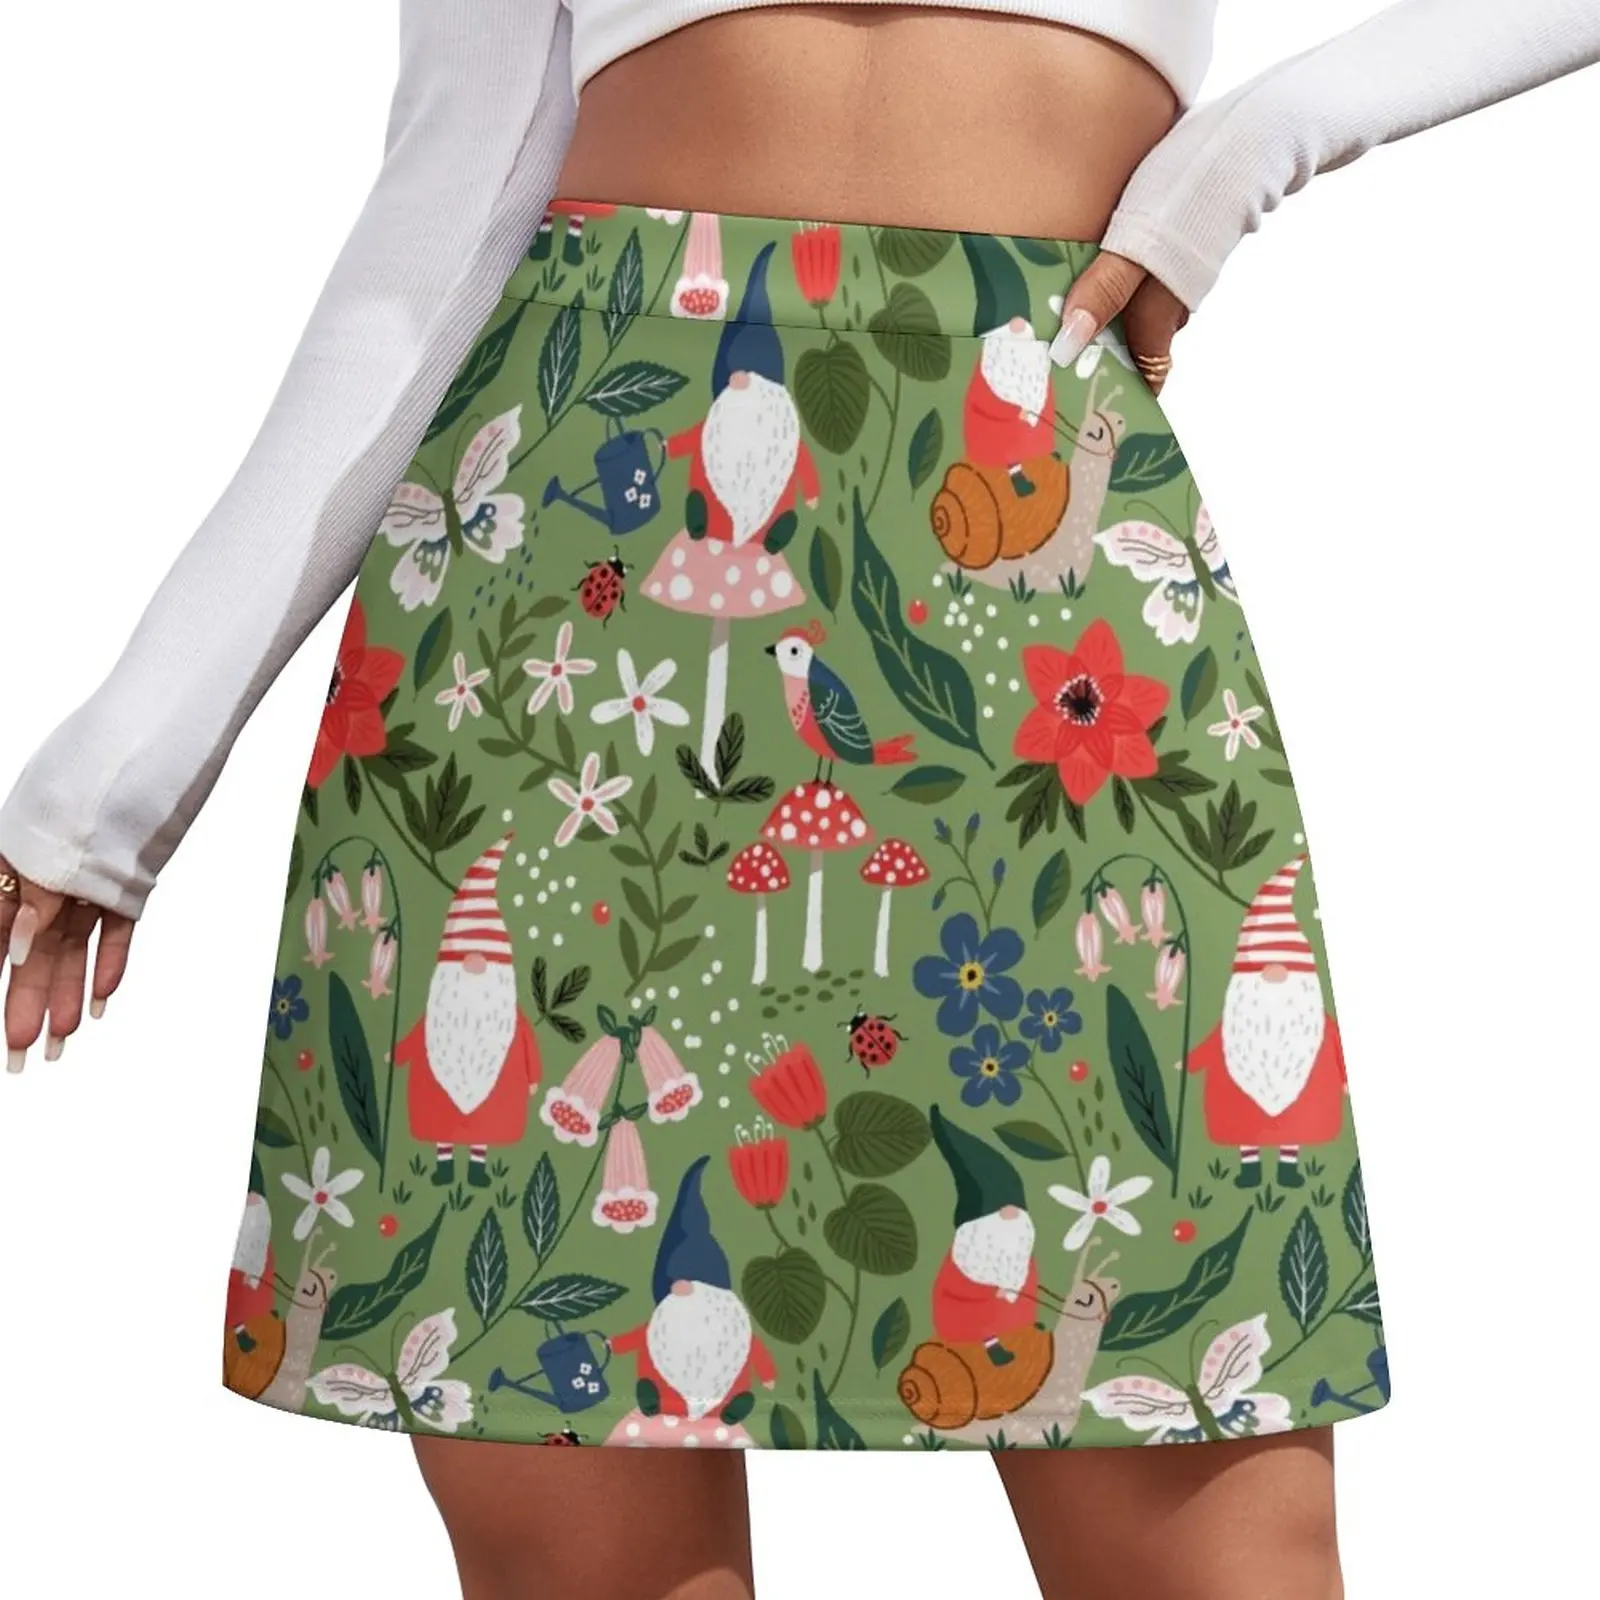 

Причудливая садовая мини-юбка в виде гнома, улитки, Женская юбка для косплея